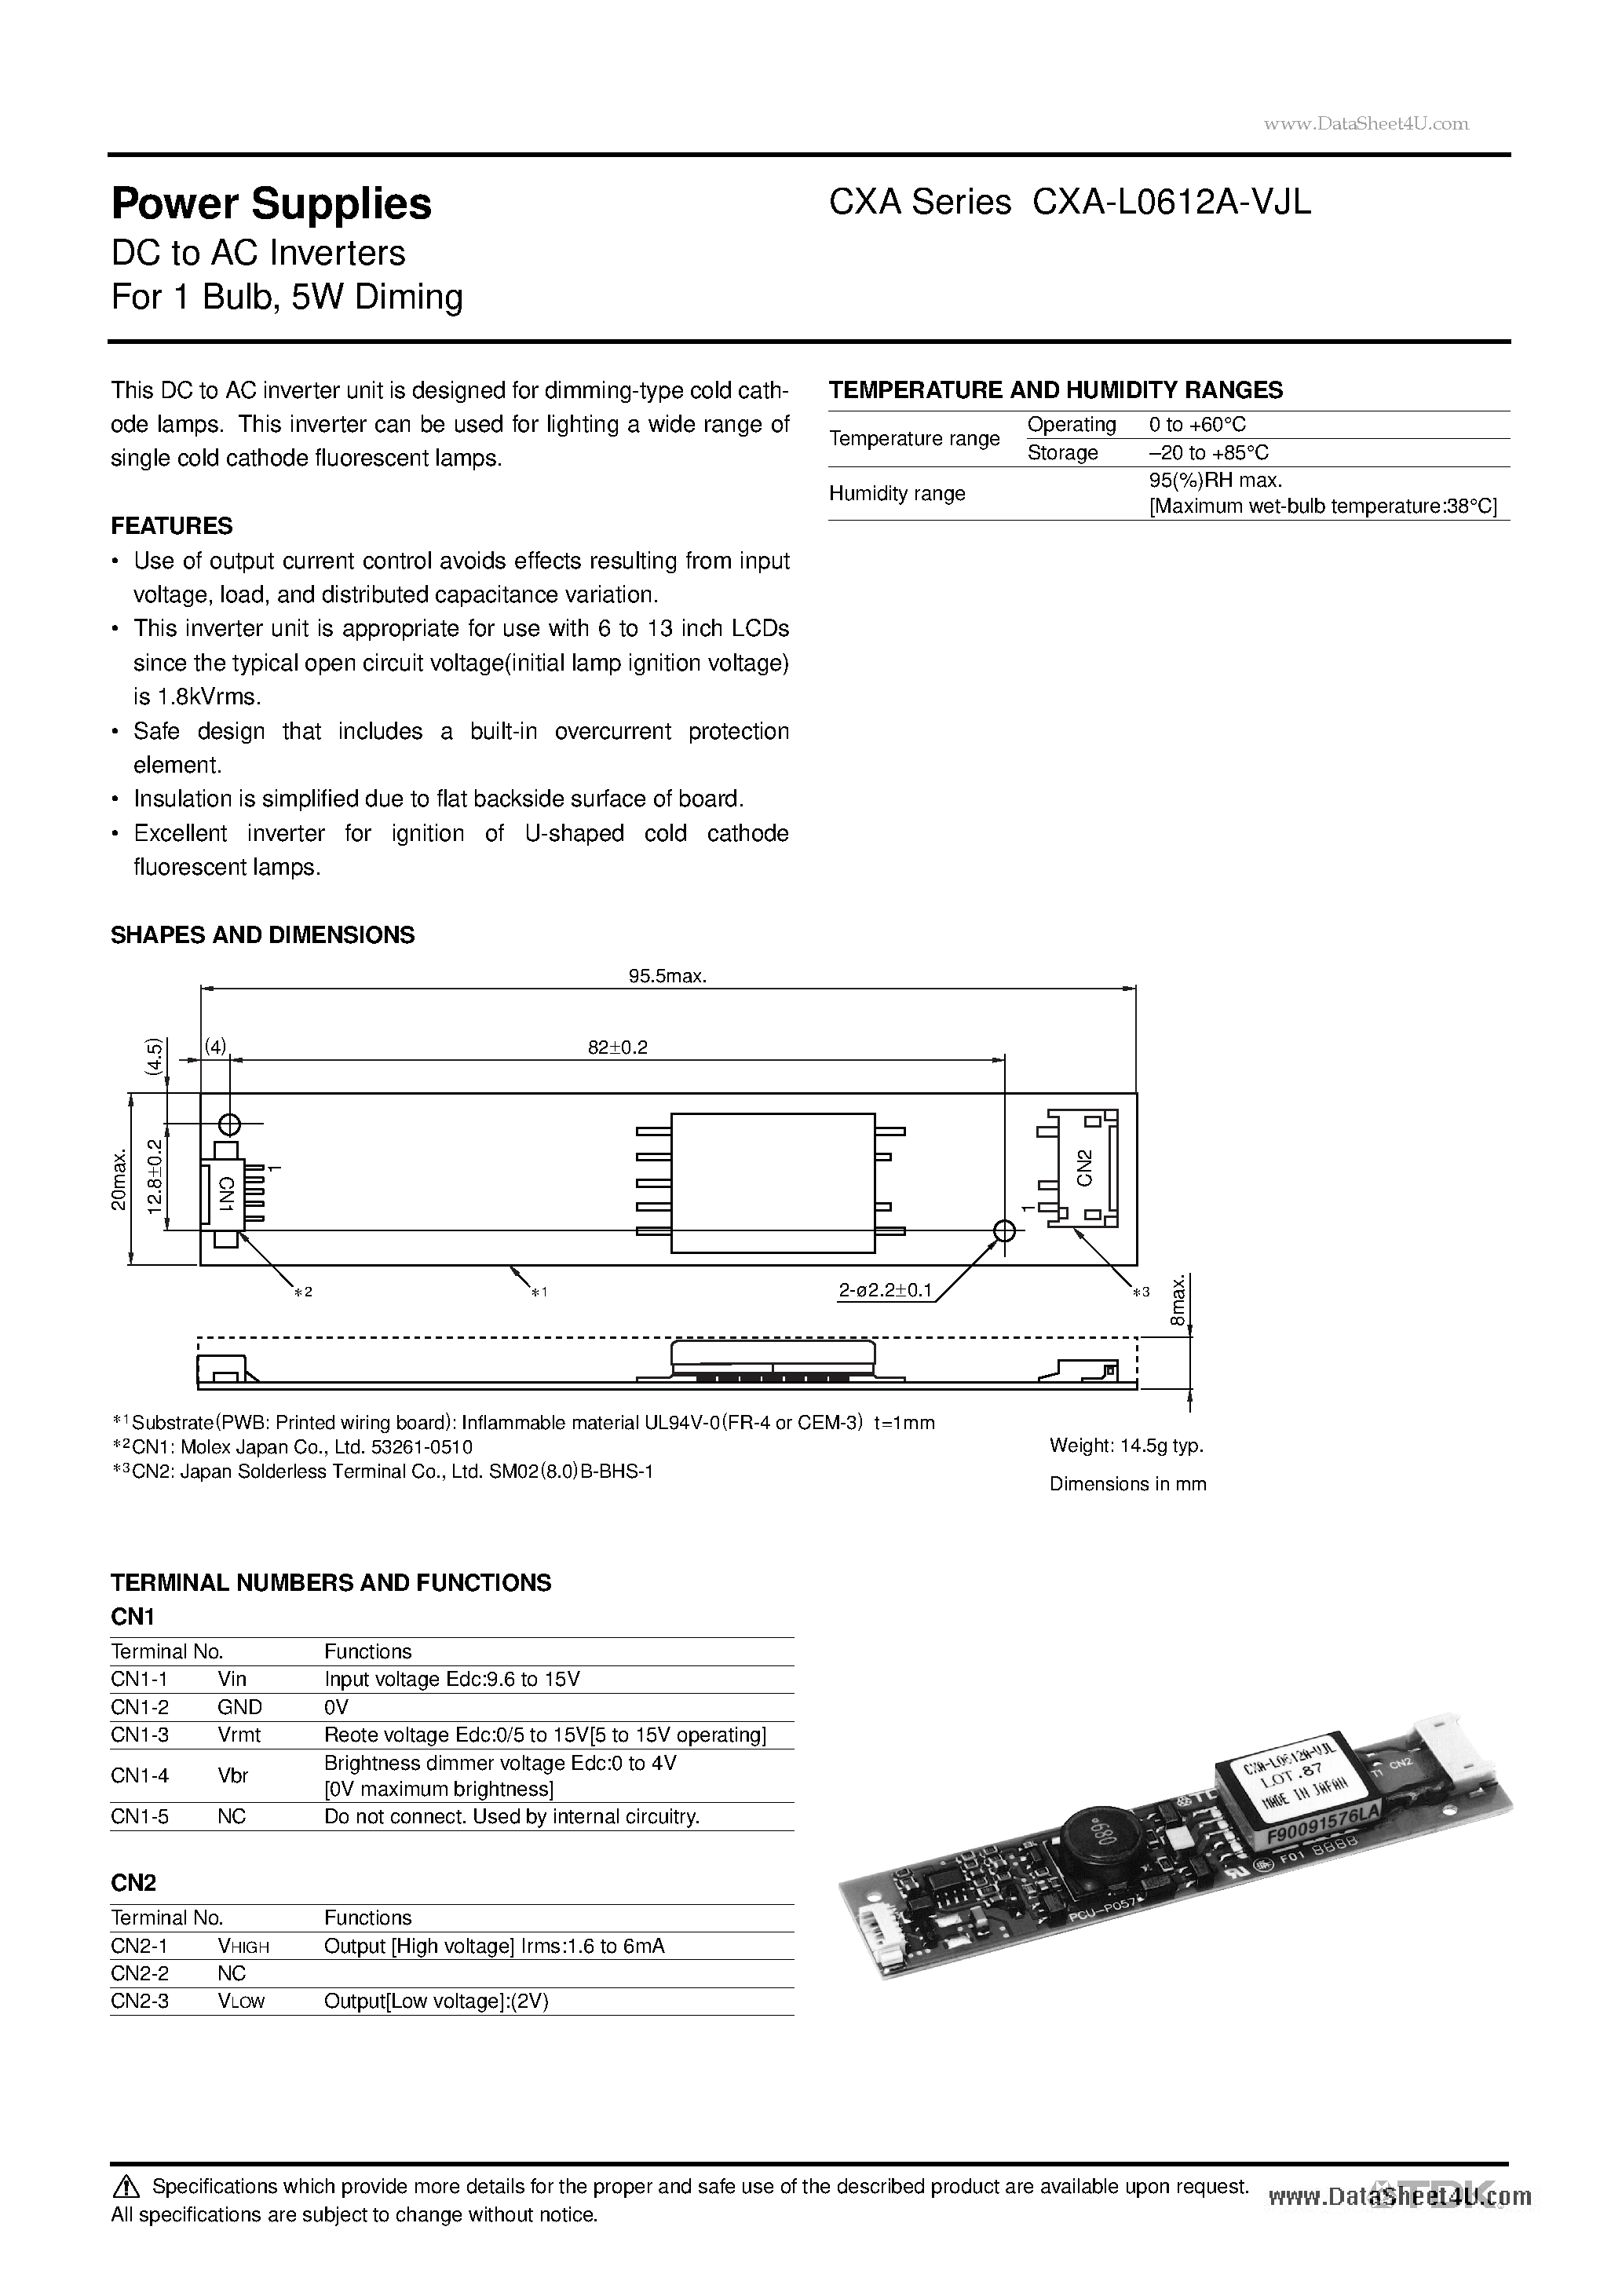 Даташит CXA-L0612A-VJL - Power Supplies DC to AC Inverters страница 1